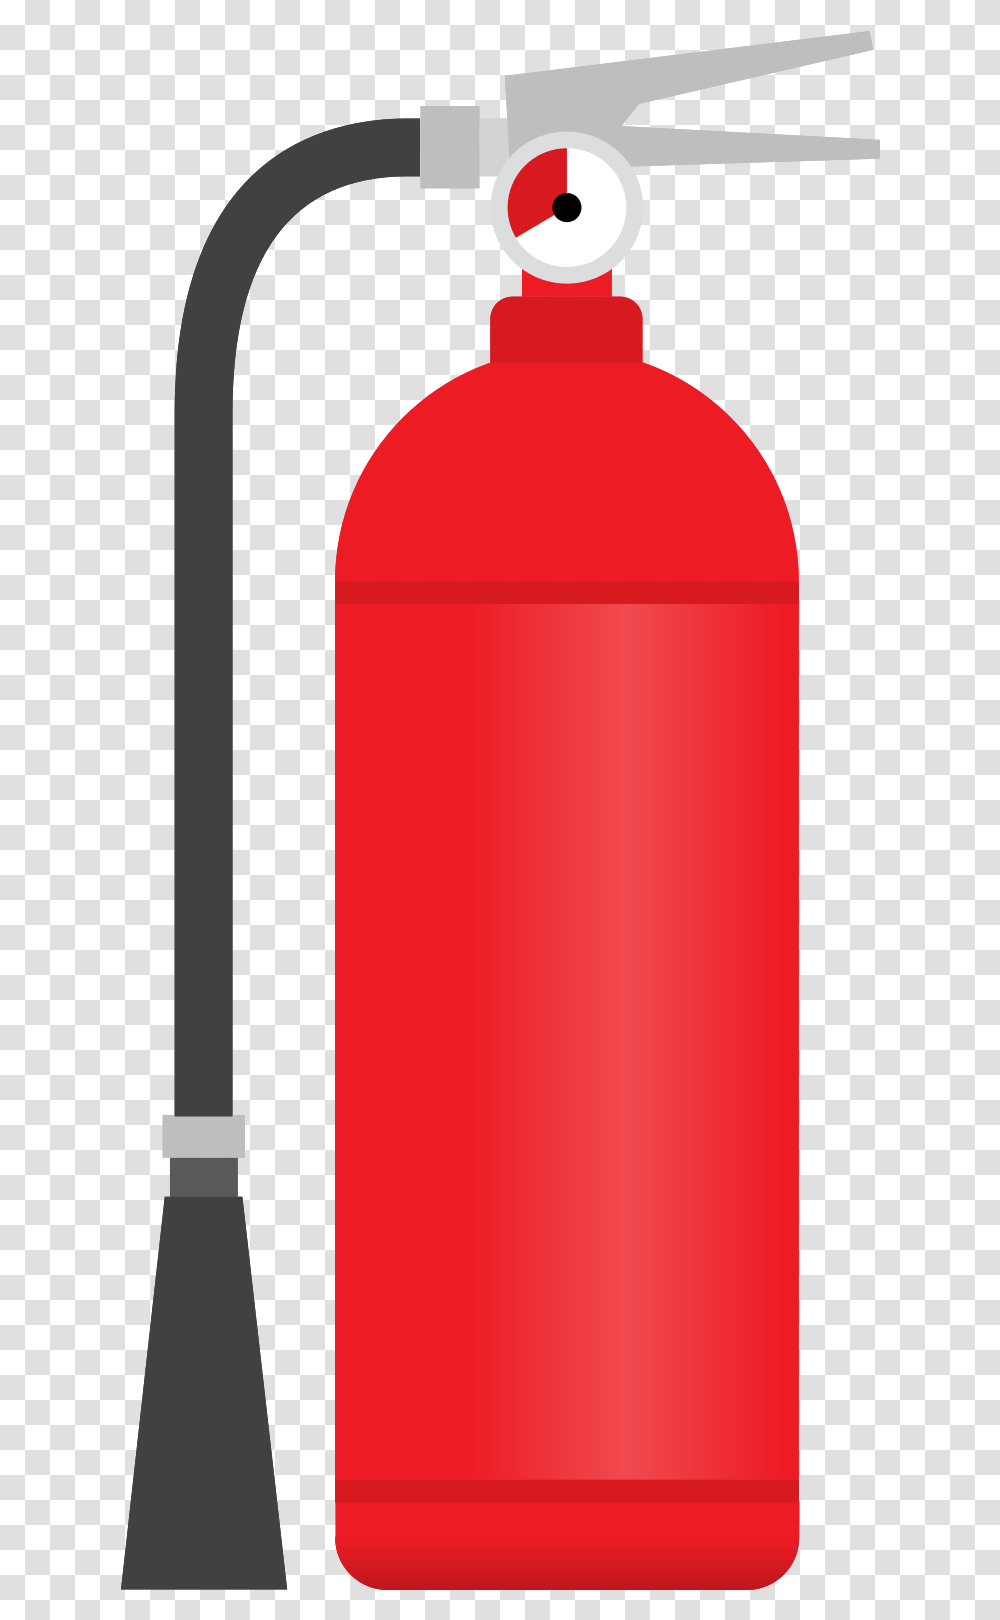 Free Fire Extinguisher With Cylinder, Bottle, Beverage, Drink, Pop Bottle Transparent Png